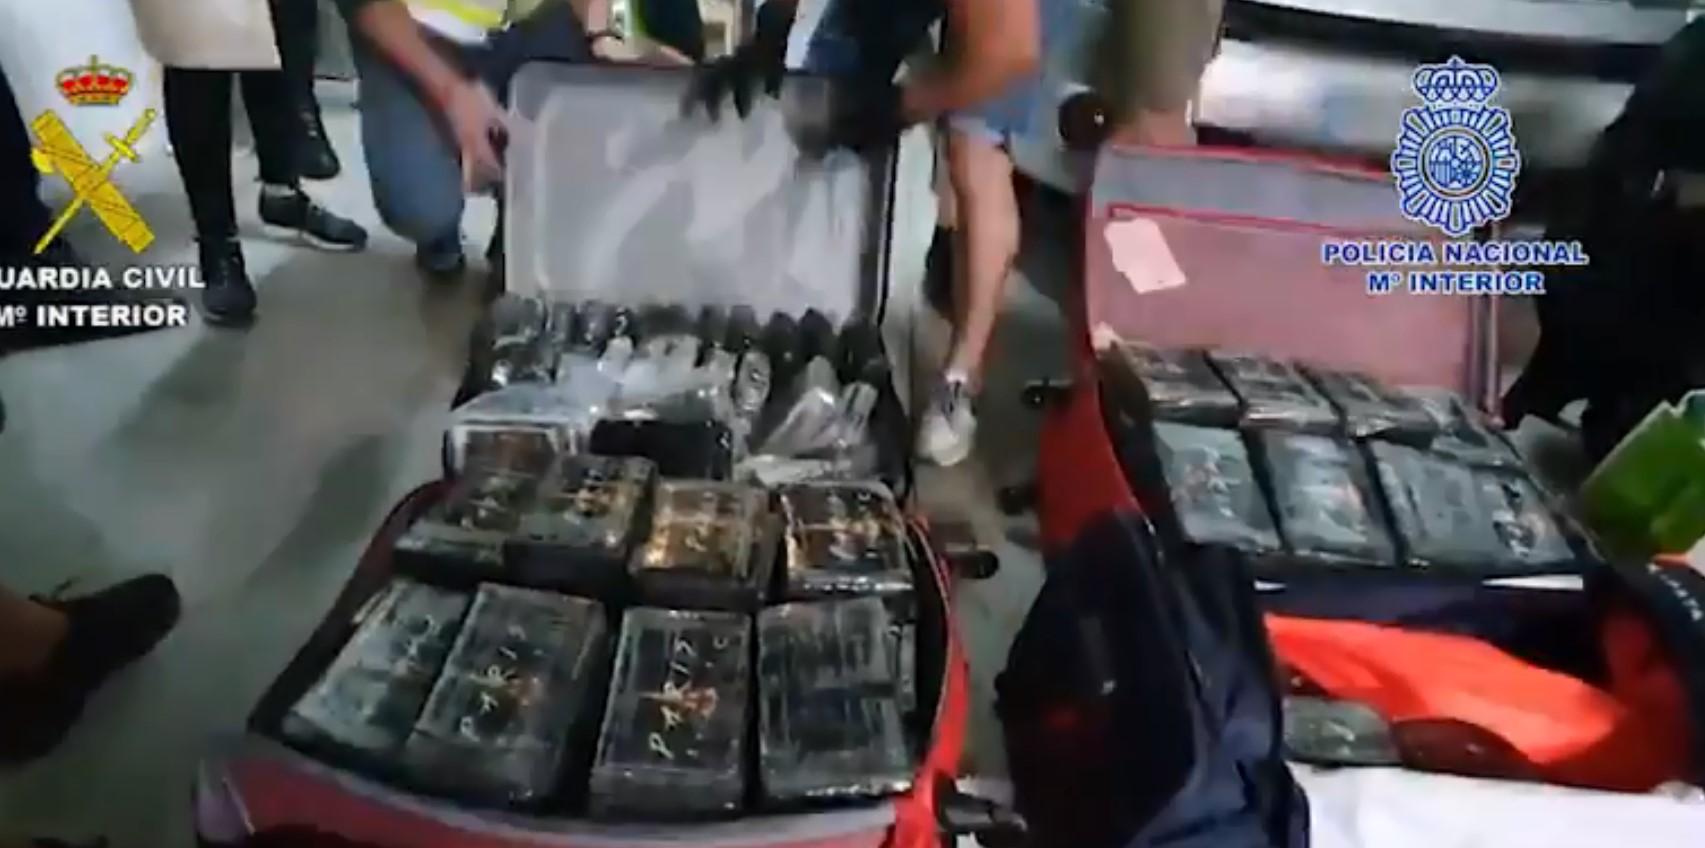 Pogledajte kako je španska policija upala kod Škaljaraca, uhapsila ih i oduzela 400 kilograma kokaina i 500.000 eura